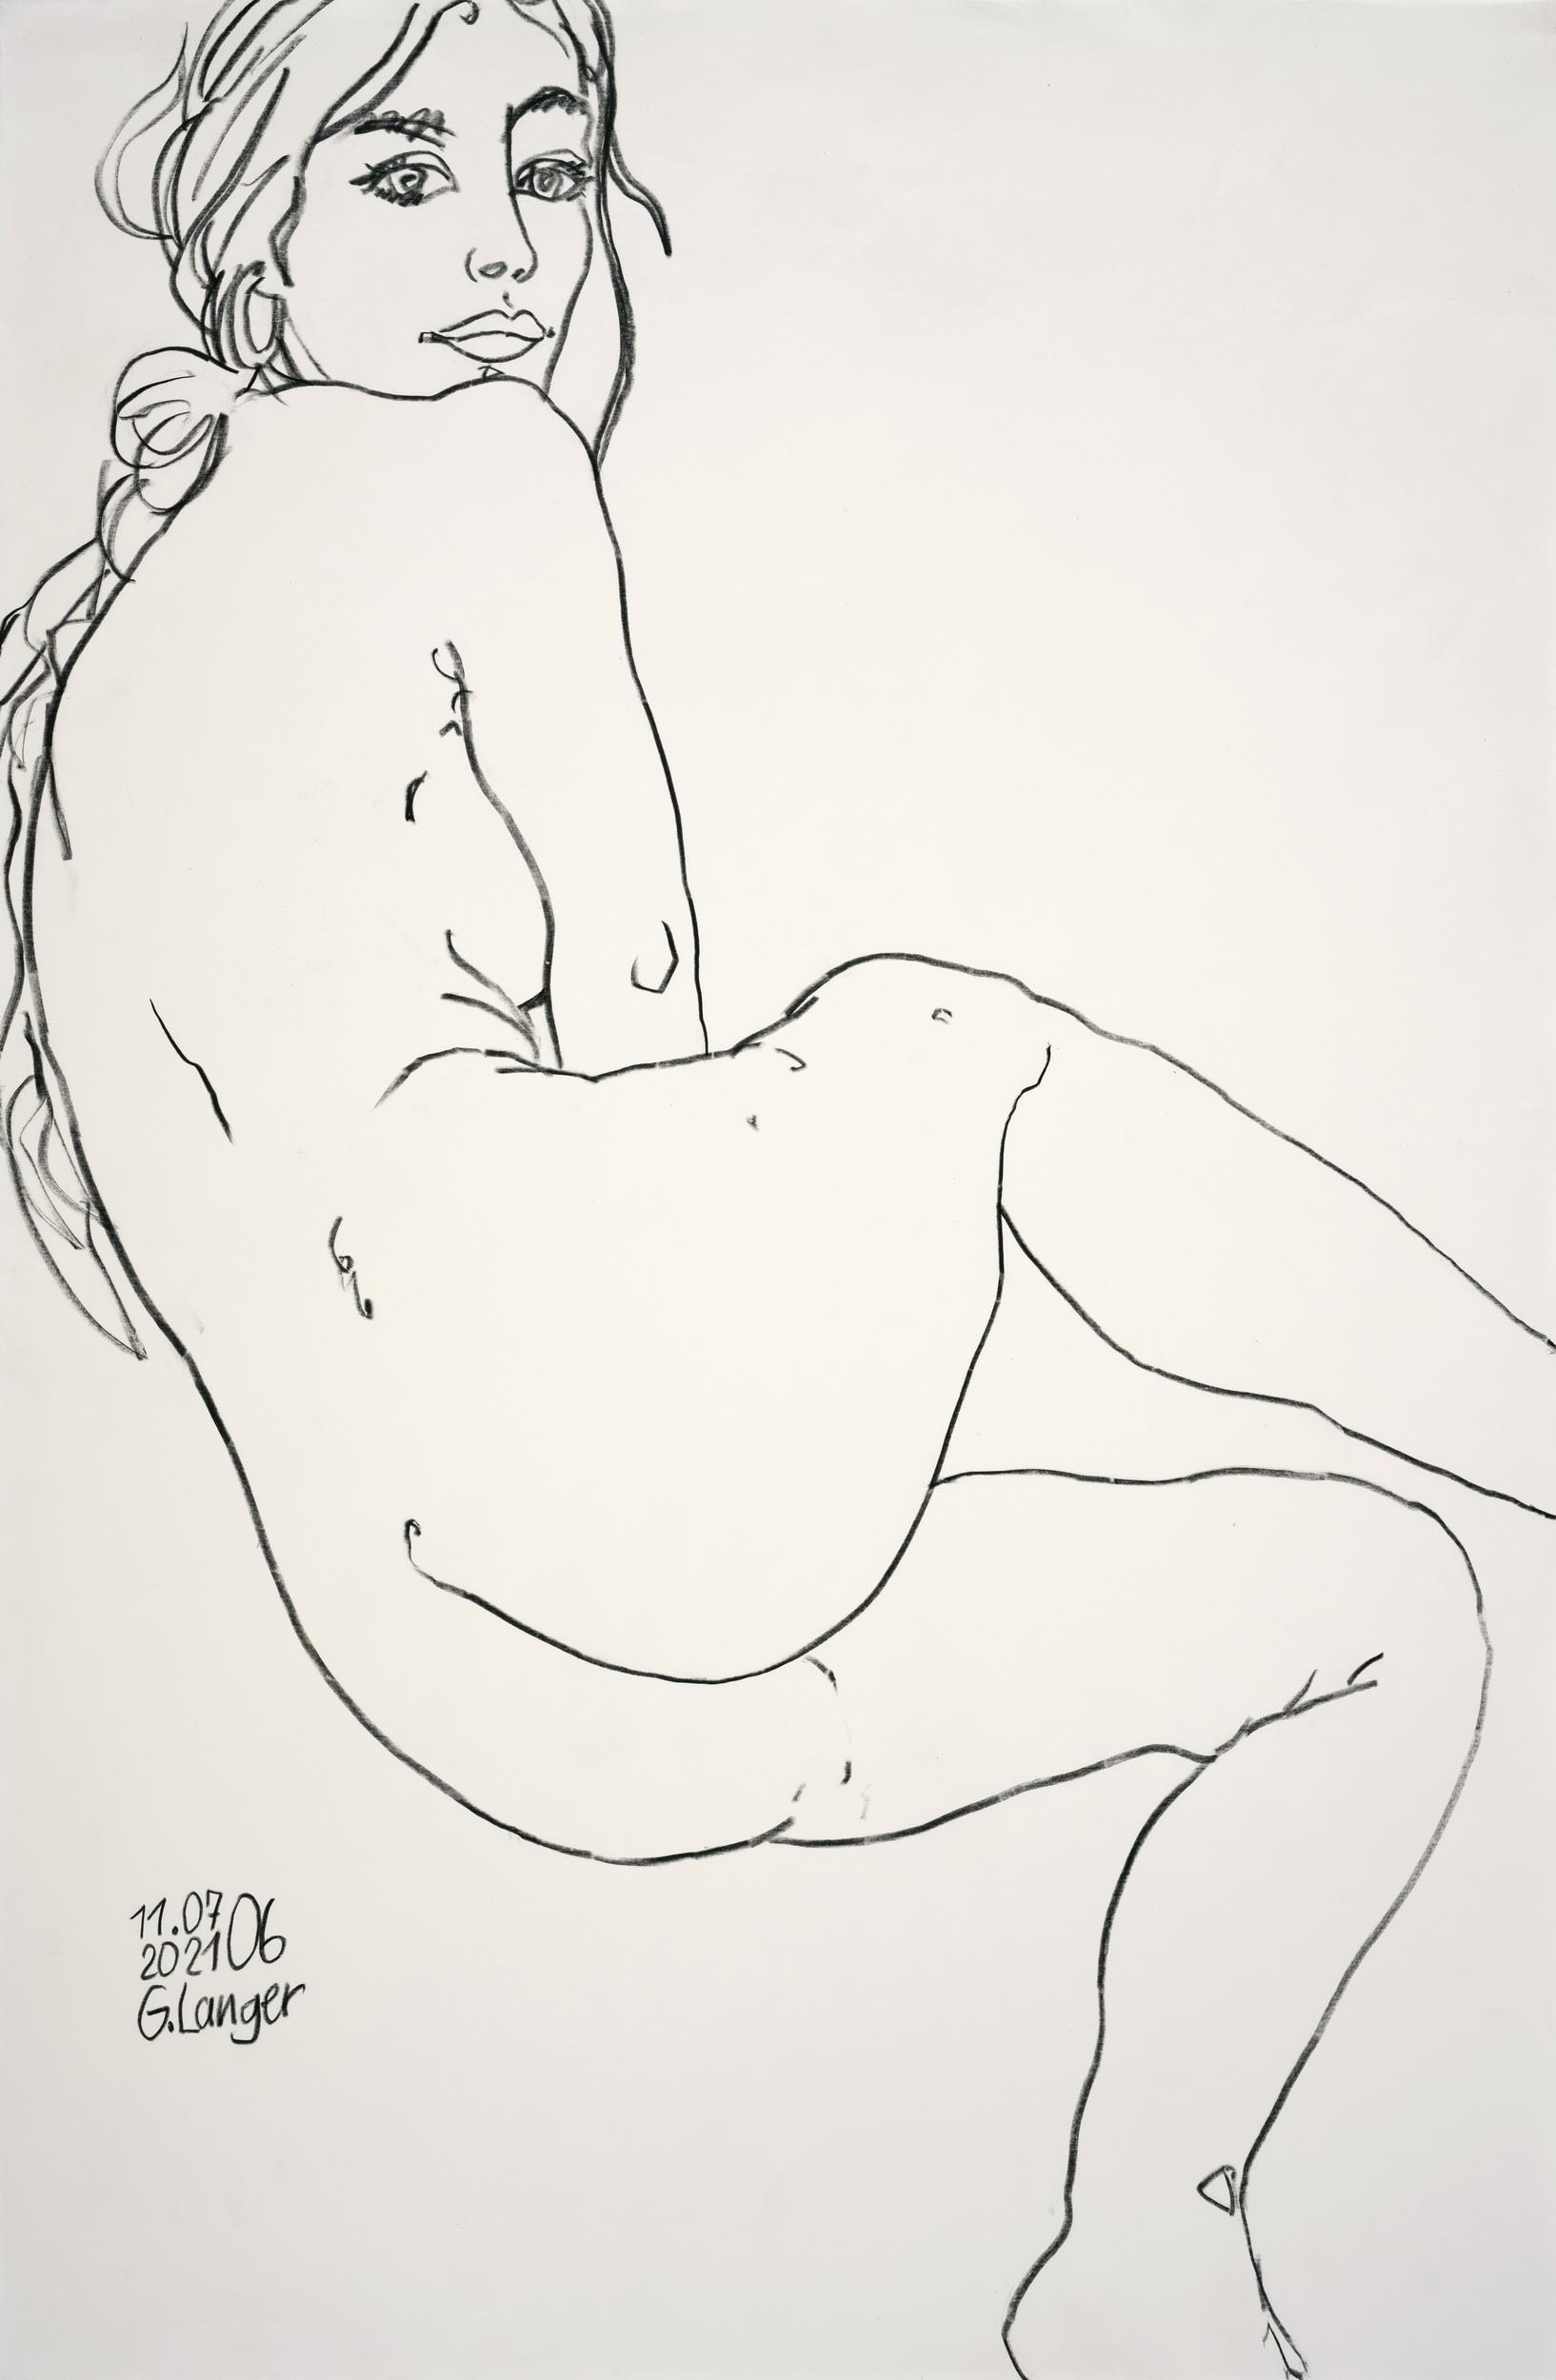 Gunter Langer, Sanfte Schöne, 2021, Zeichnung, Büttenpapier, 102 x 66 cm